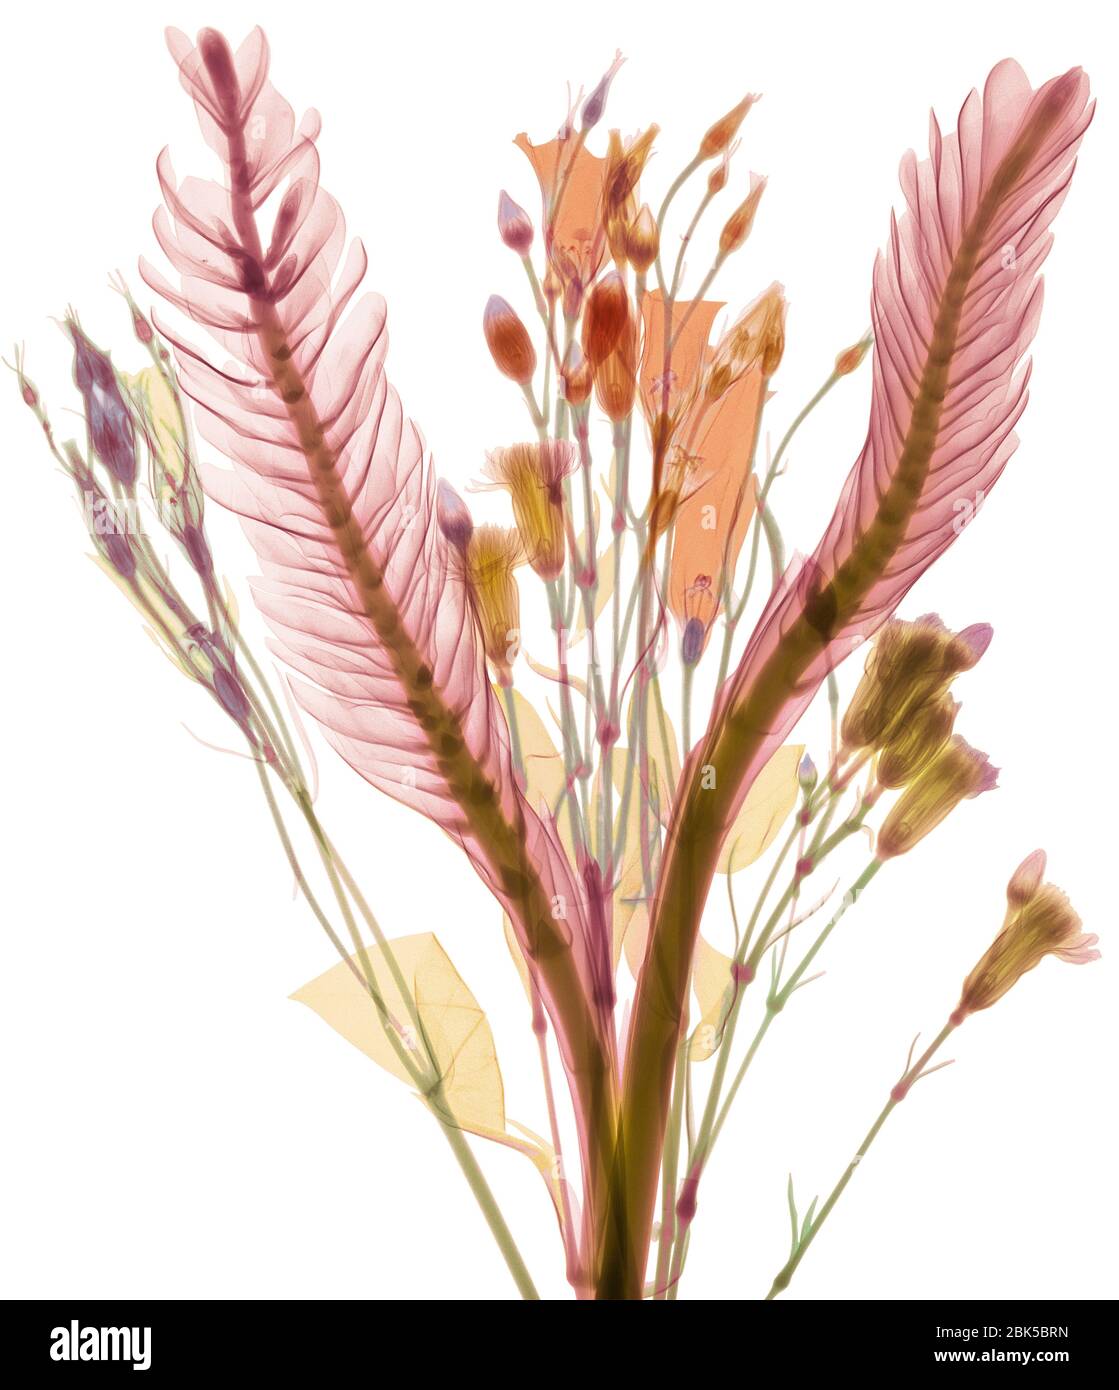 Feuilles longues et boutons de fleurs pastel, rayons X colorés. Banque D'Images